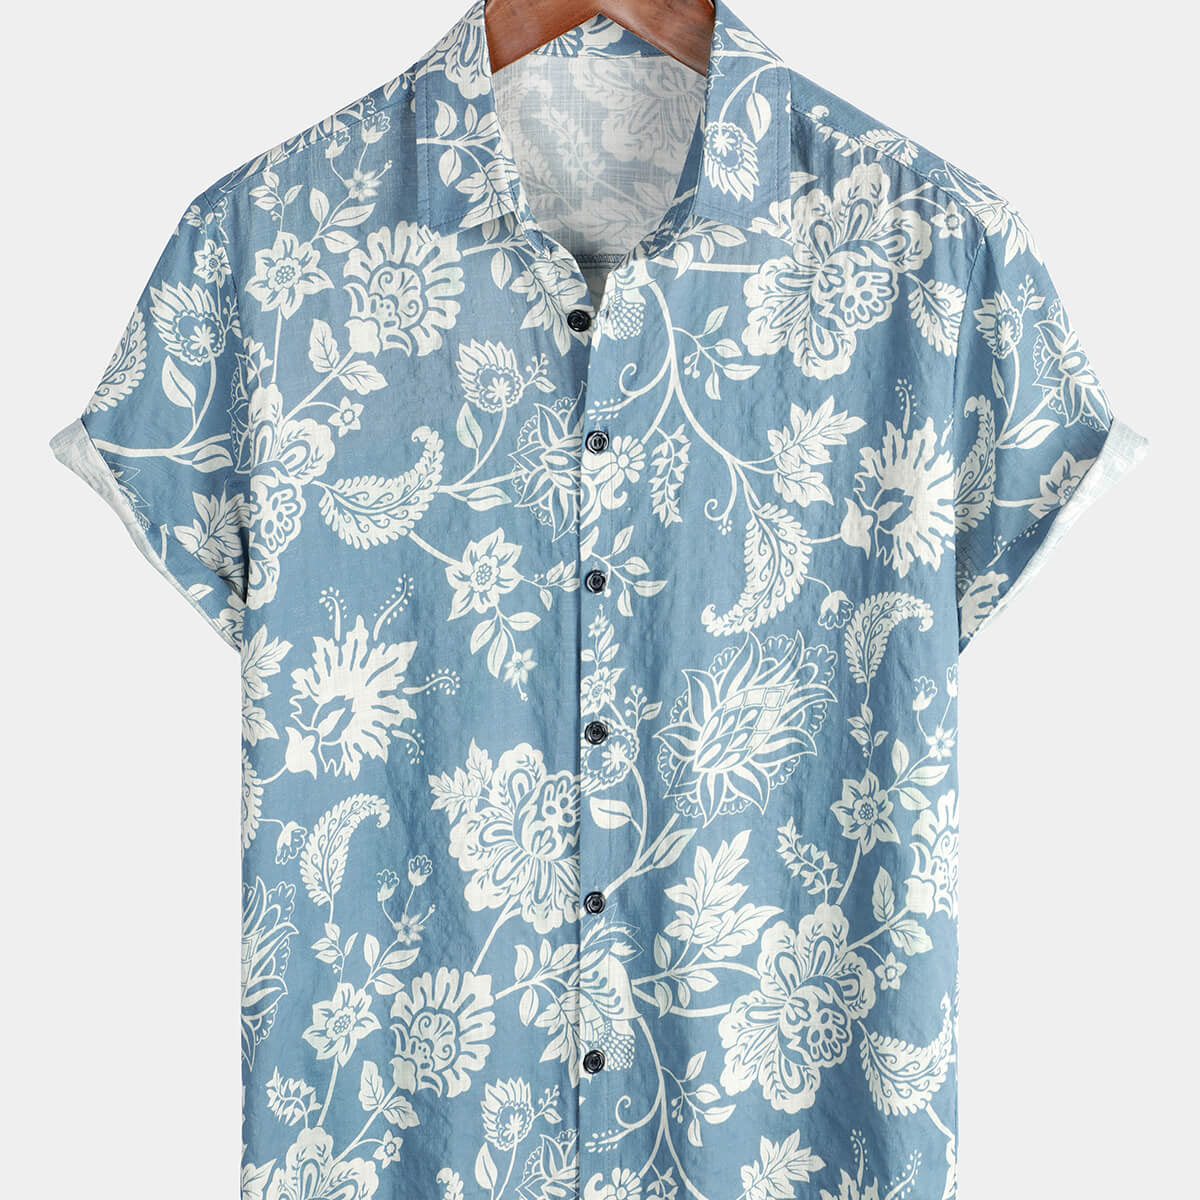 Men's Blue Floral Hawaiian Short Sleeve Button Up Summer Shirt